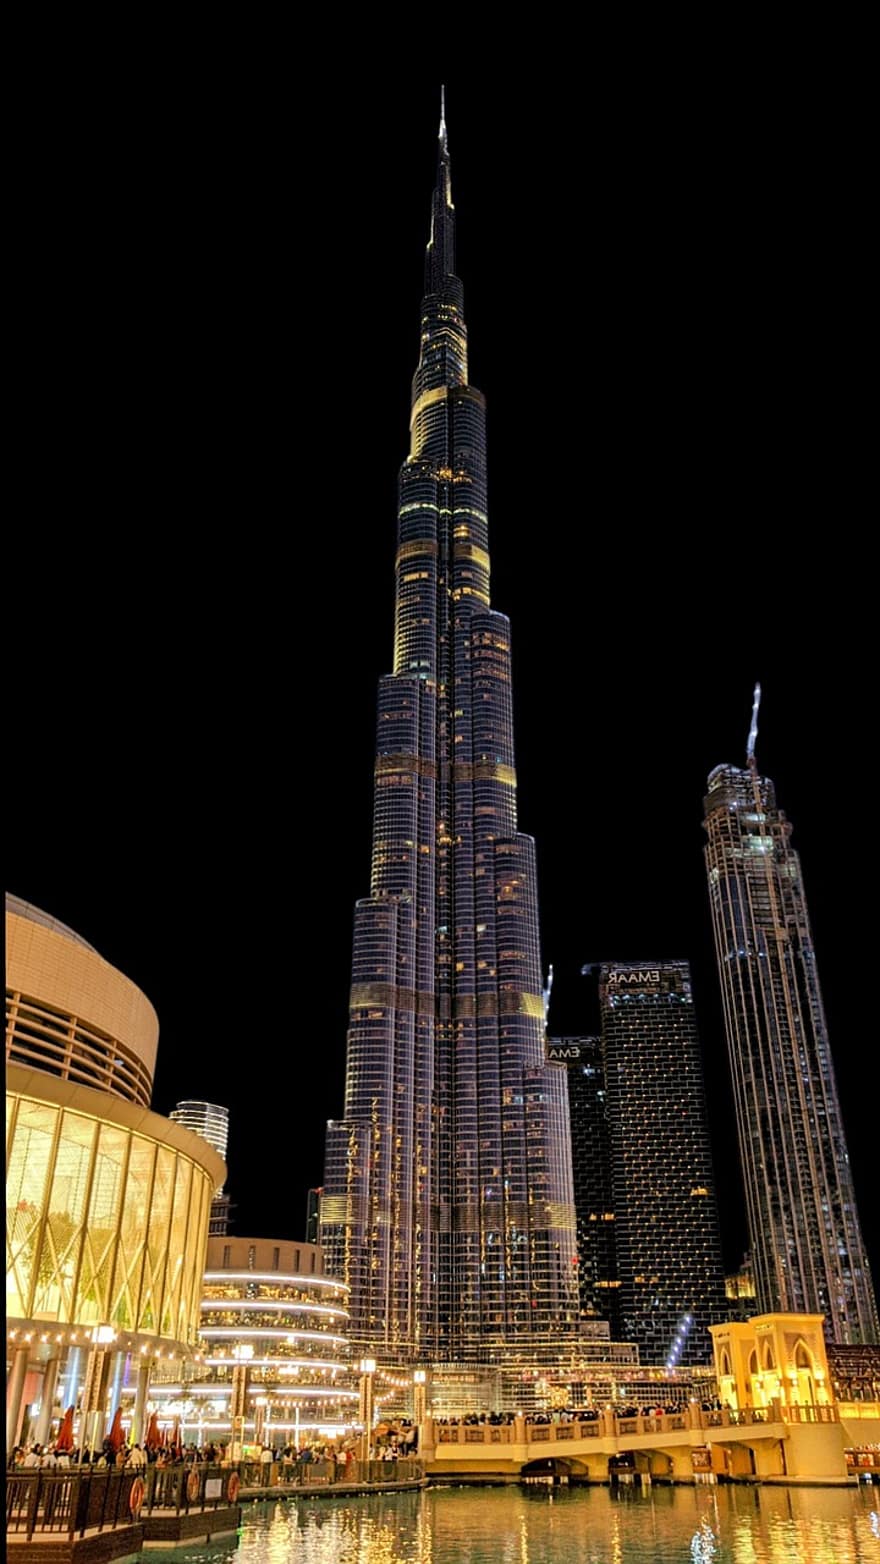 Burj Khalifa, emiraty, architektura, Miasto, miejski, metropolita, drapacze chmur, noc, wieżowiec, znane miejsce, pejzaż miejski